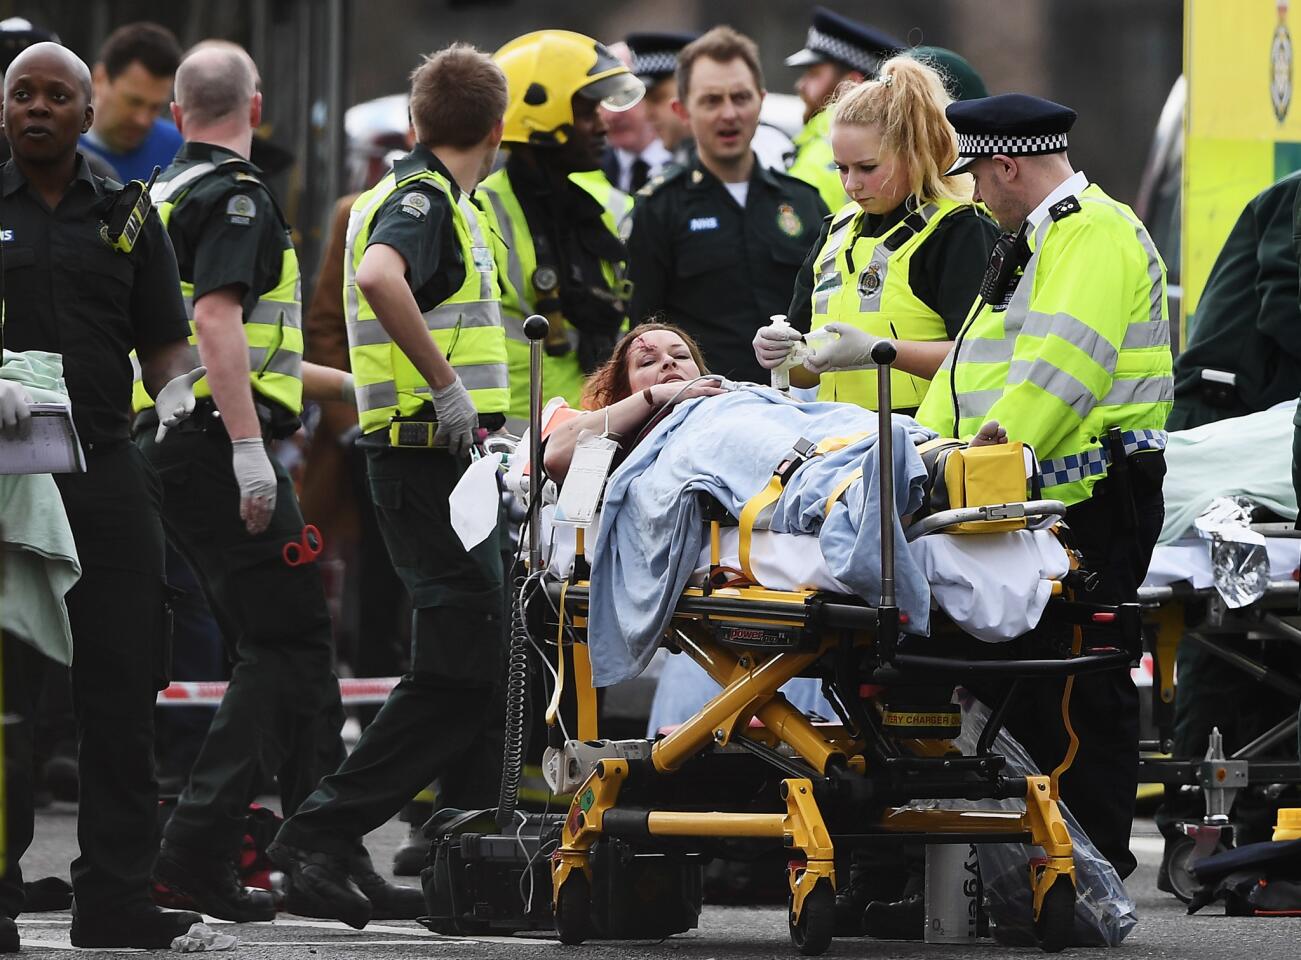 Terror attack in London near Parliament